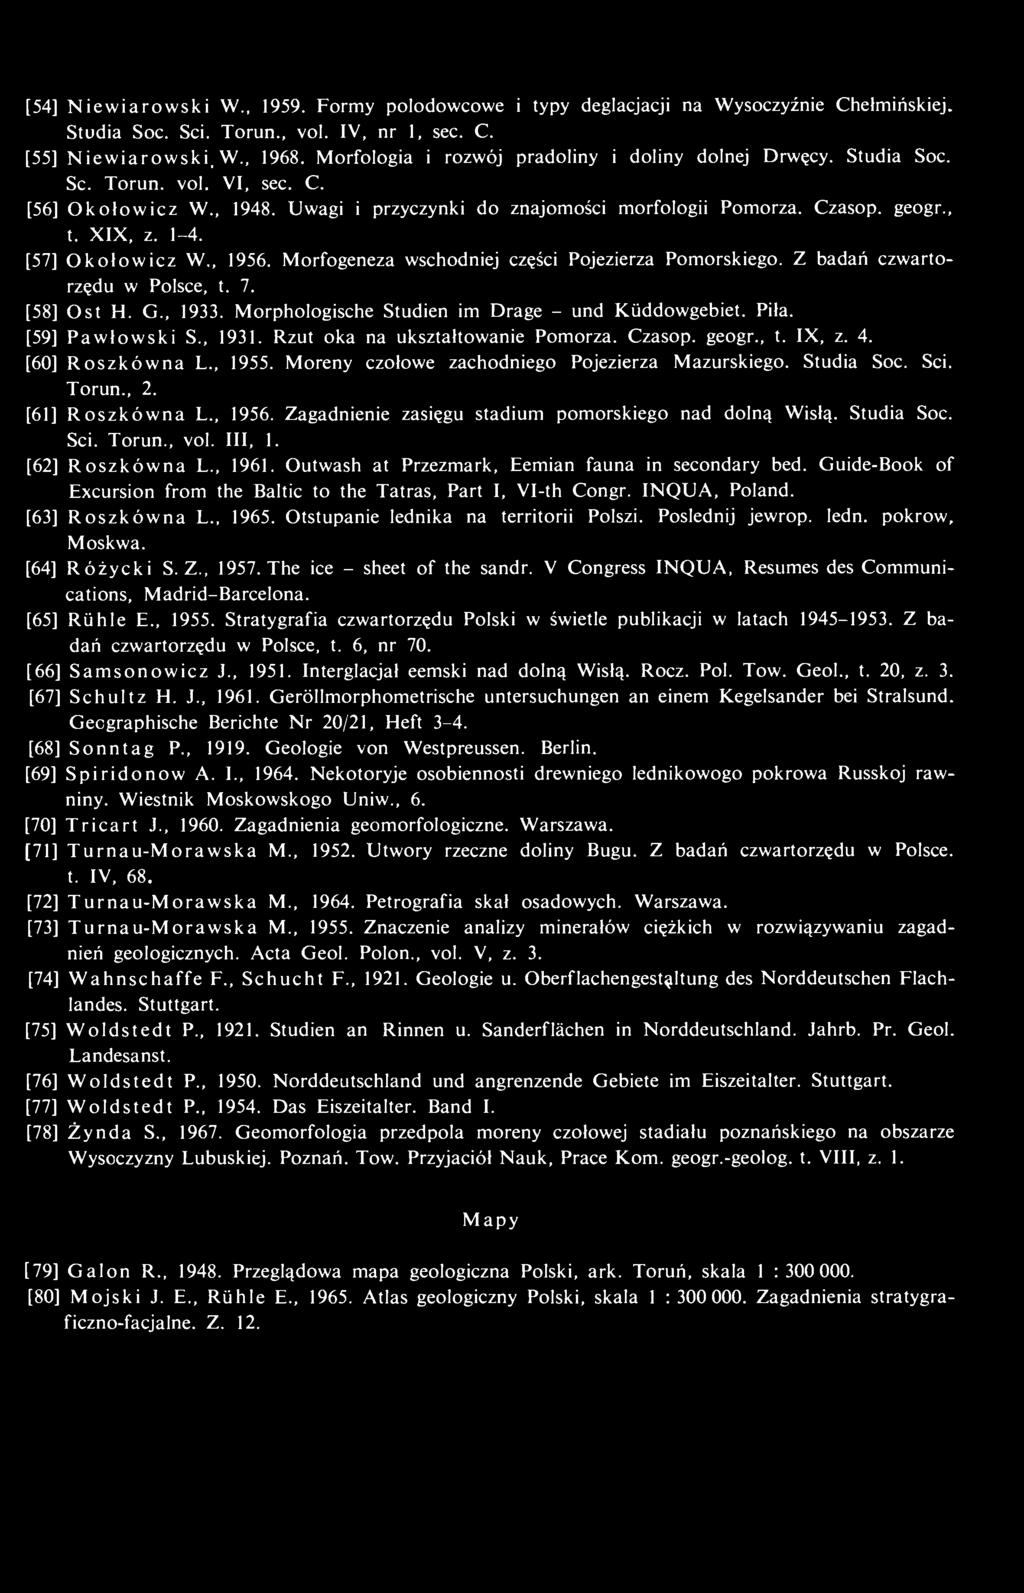 1-4. [57] Okołowicz W., 1956. Morfogeneza wschodniej części Pojezierza Pomorskiego. Z badań czwartorzędu w Polsce, t. 7. [58] Ost H. G., 1933. Morphologische Studien im Drage - und Küddowgebiet. Piła.